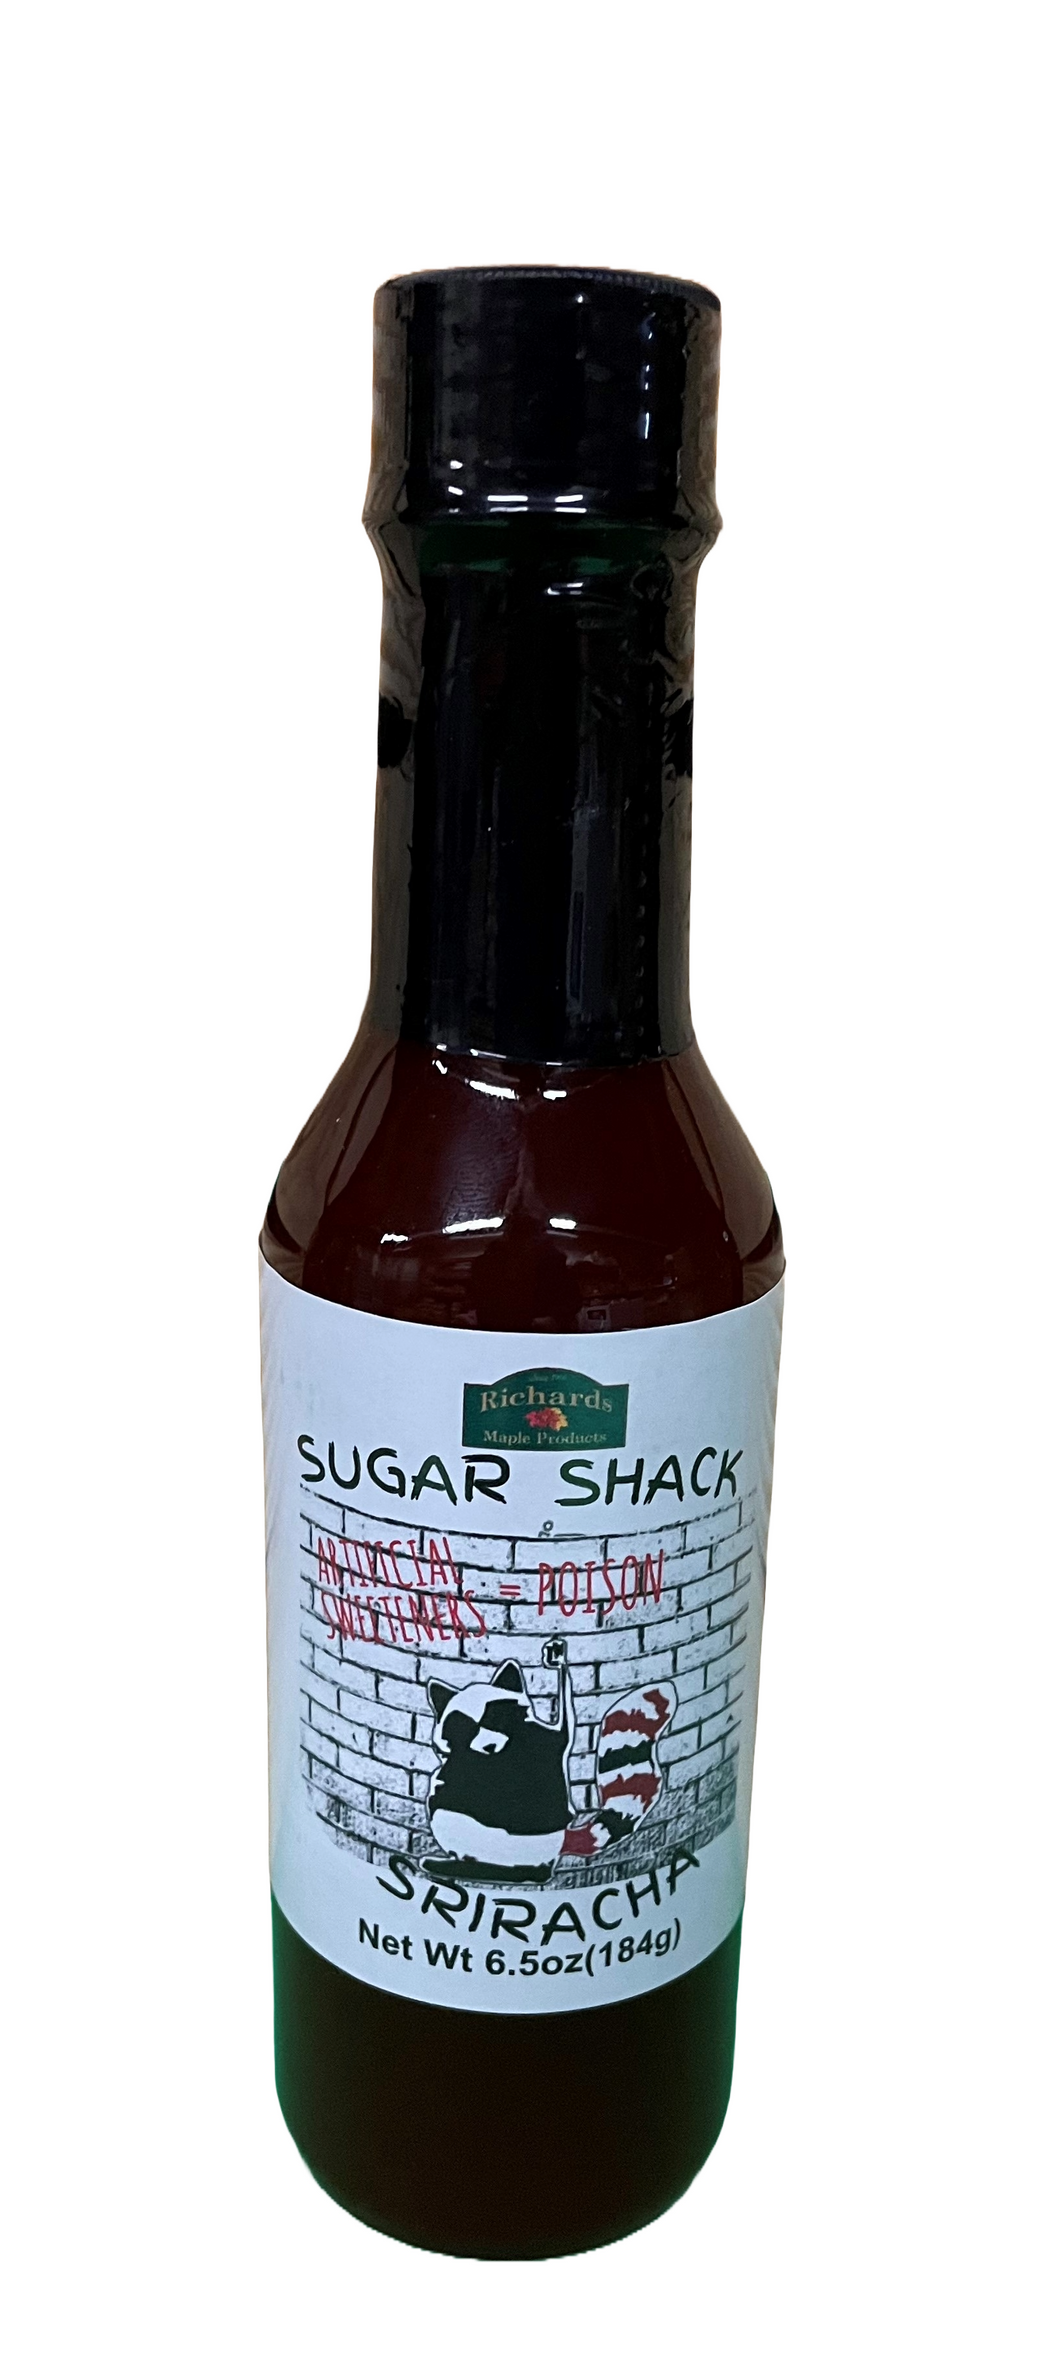 Sugar Shack Sriracha Hot Sauce